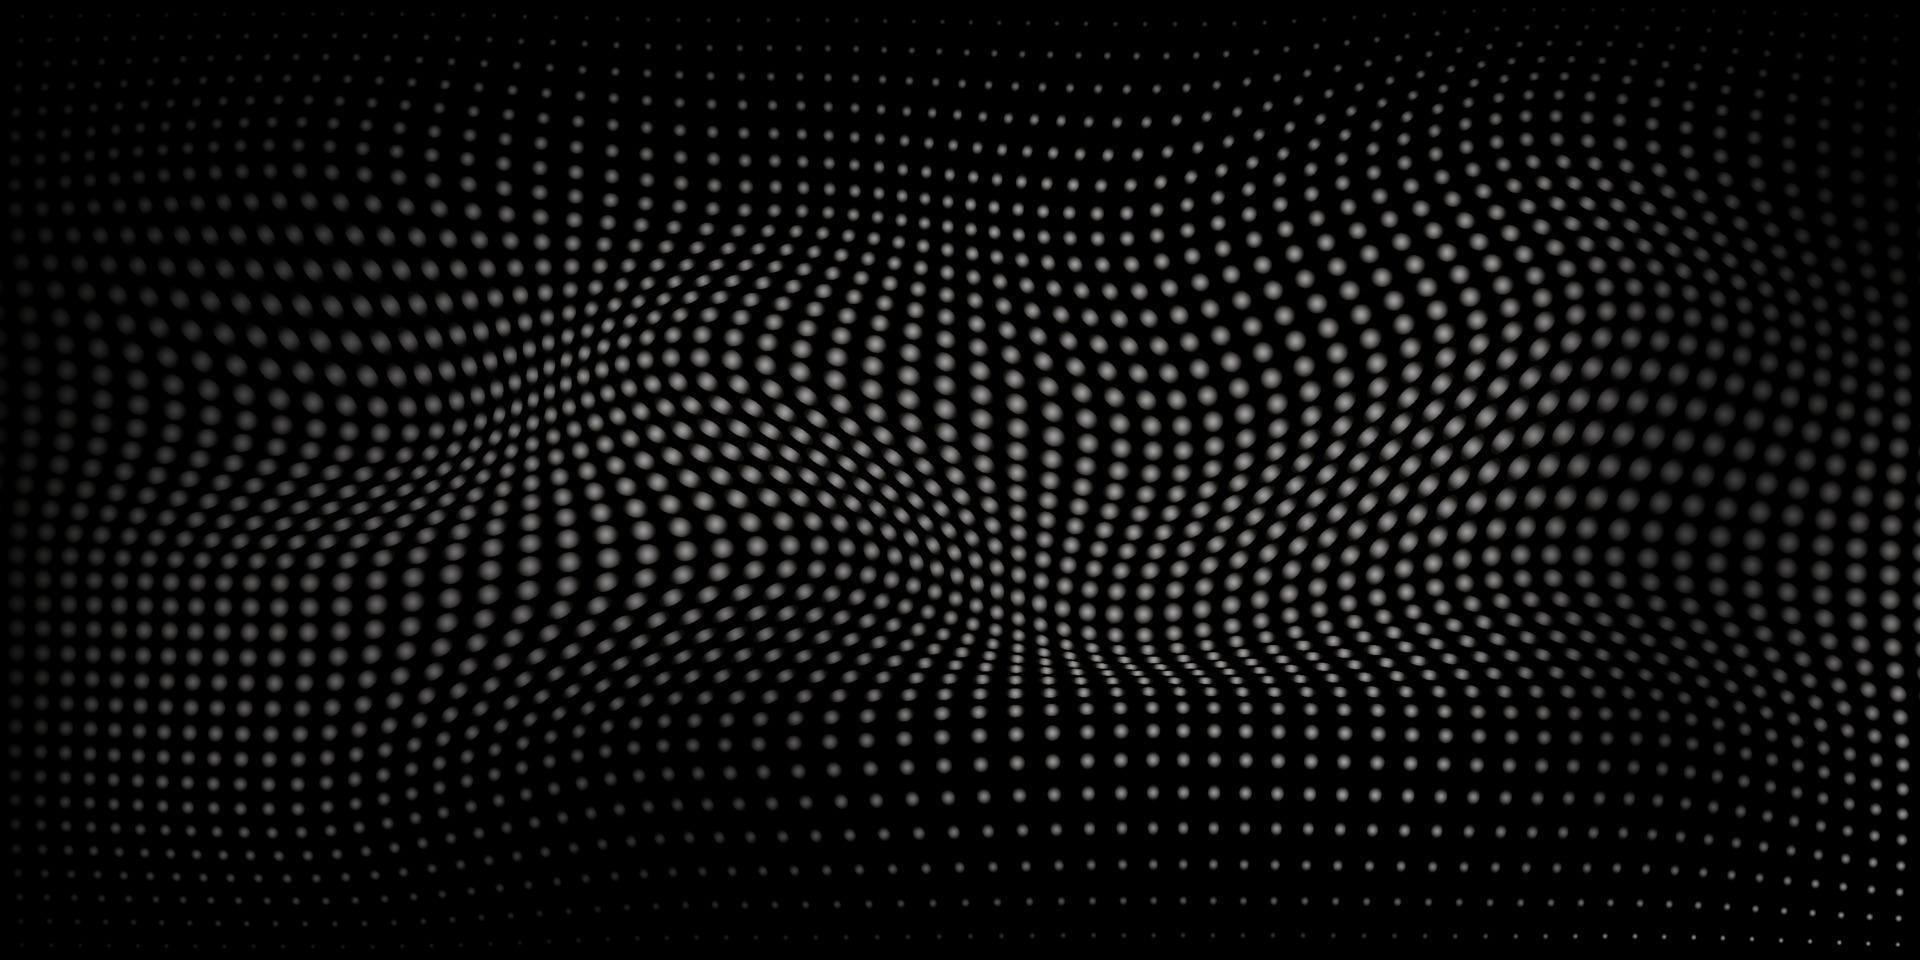 onda digital futurista de partículas sobre fondo negro oscuro. patrón de onda semitono negro oscuro. plantilla con ilusión óptica de puntos. diseño moderno abstracto. ilustración vectorial vector